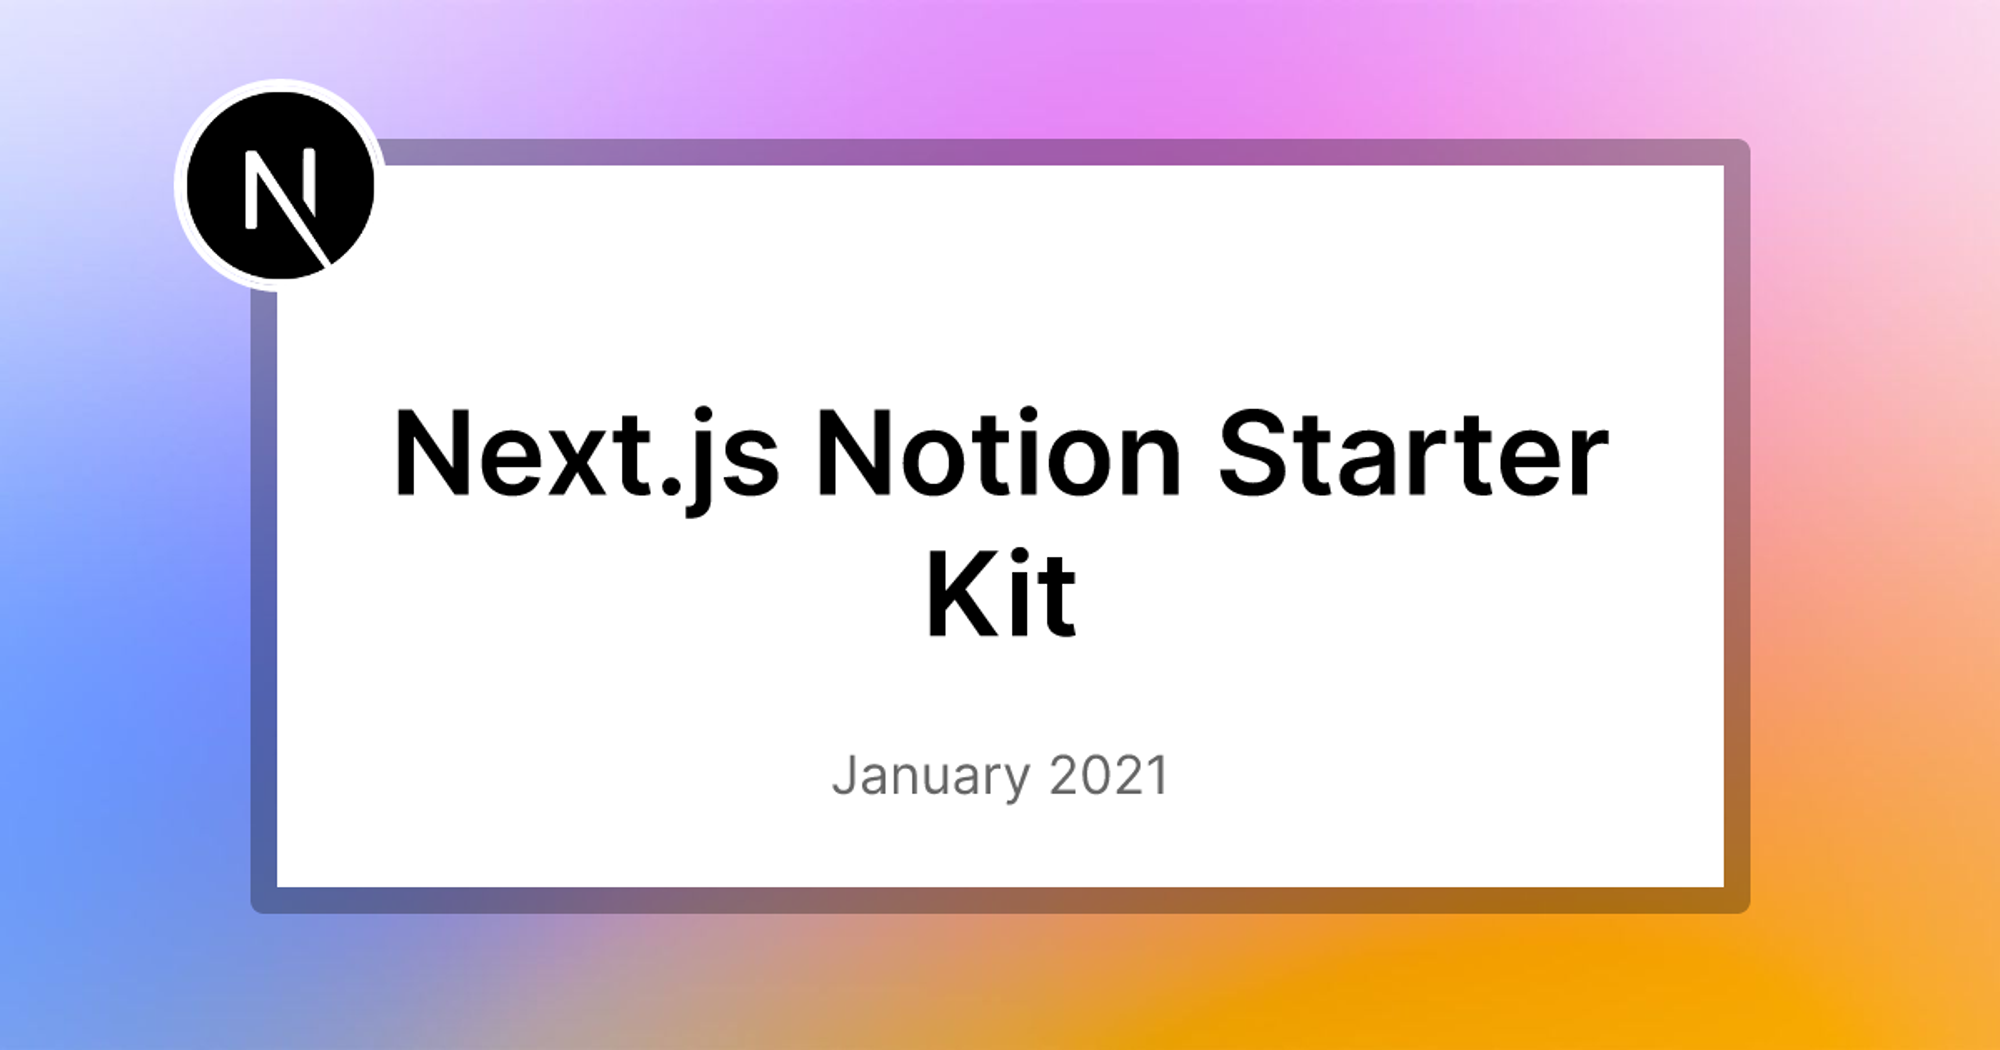 Next.js Notion Starter Kit